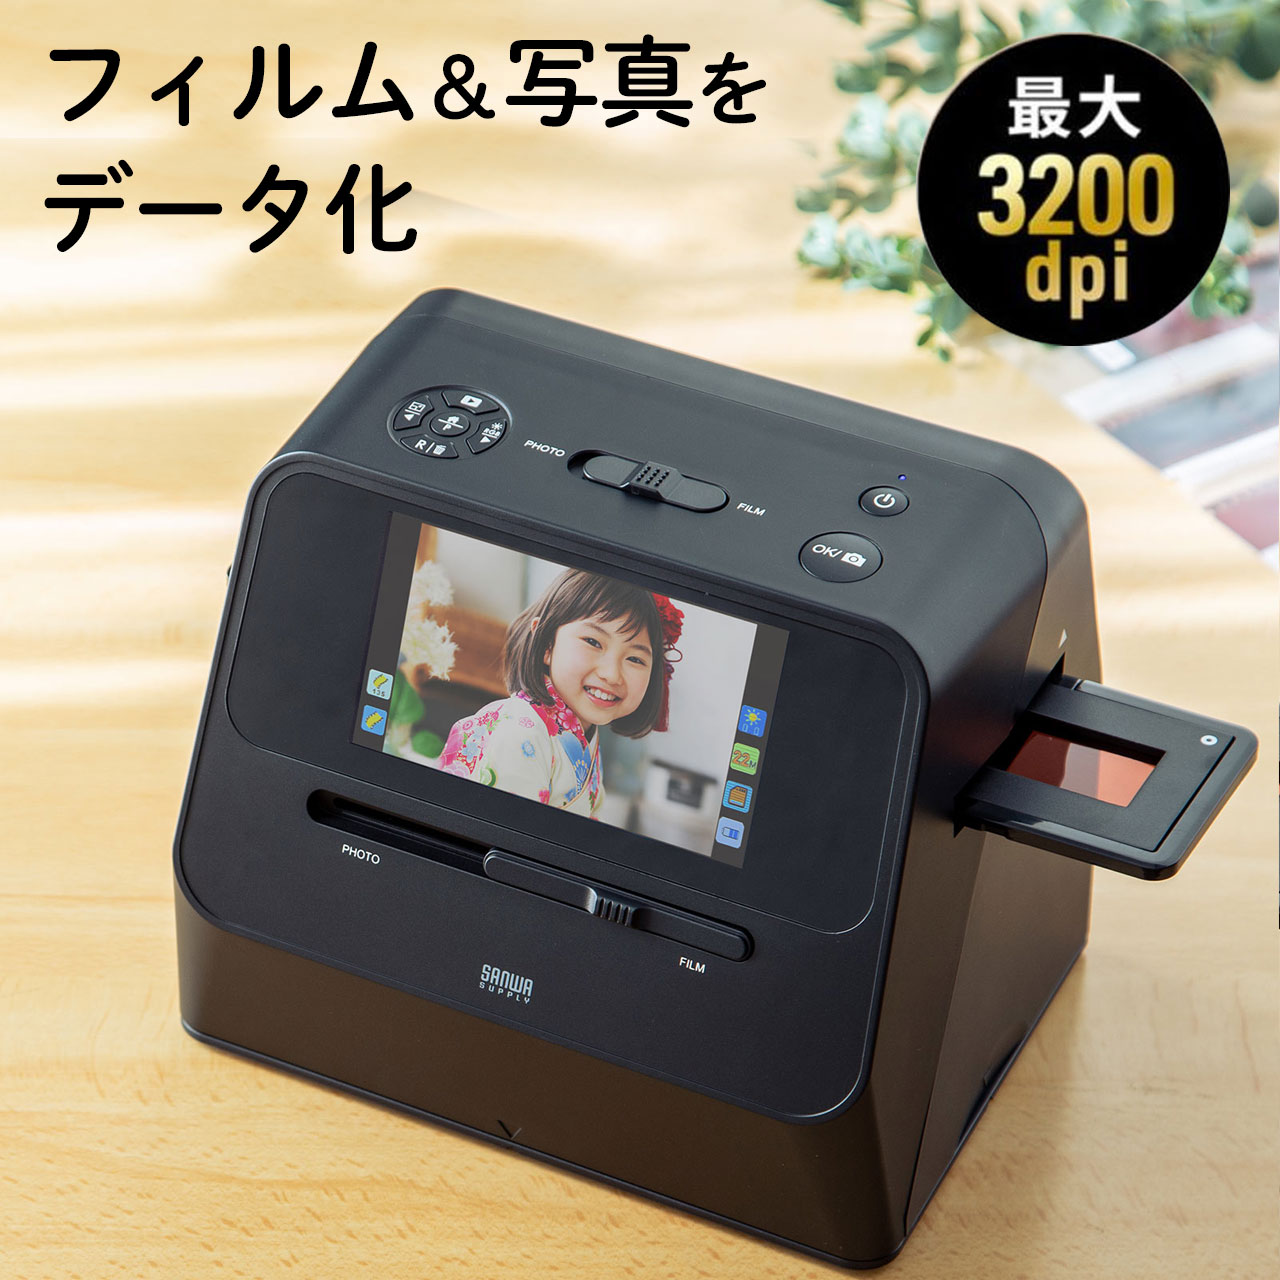 【アウトレット】フィルムスキャナー 35mm/110/126フィルム対応 ポジ対応 HDMI出力対応 デジタル化 フィルムスキャン 写真スキャン EZ4-SCN064